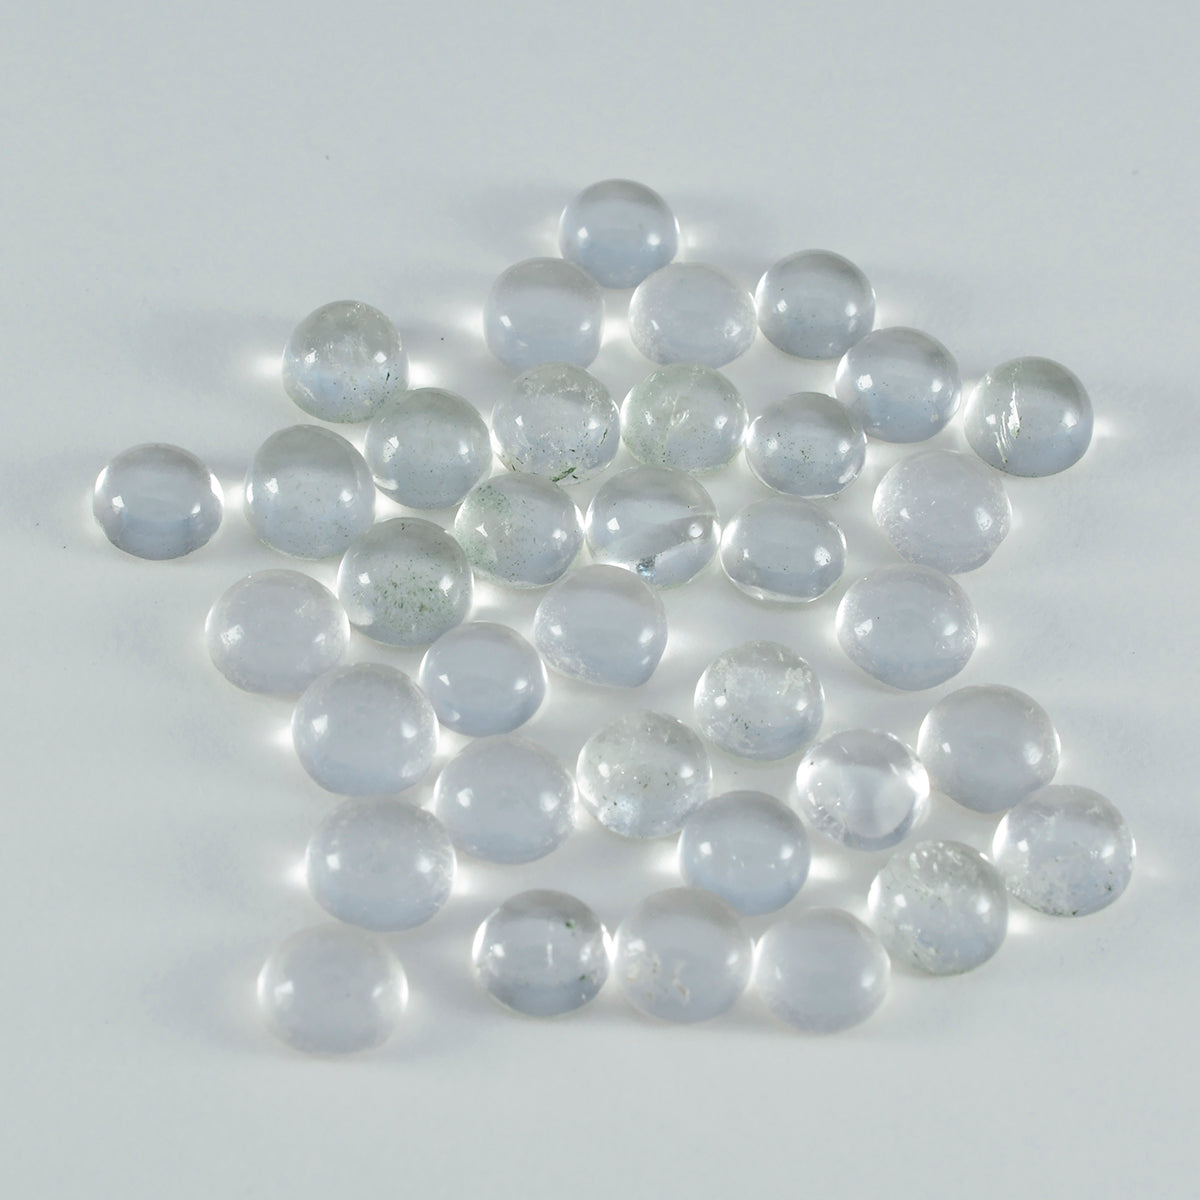 riyogems 1 шт., белый кристалл кварца, кабошон 4x4 мм, круглая форма, качество, свободные драгоценные камни